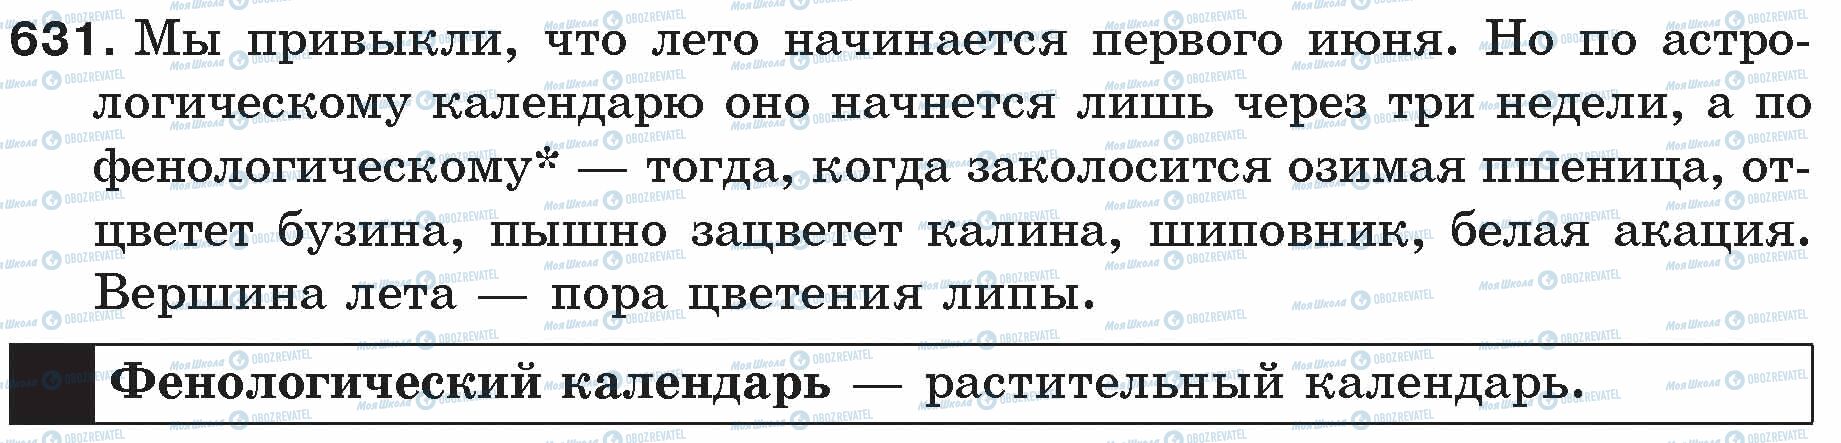 ГДЗ Русский язык 5 класс страница 631